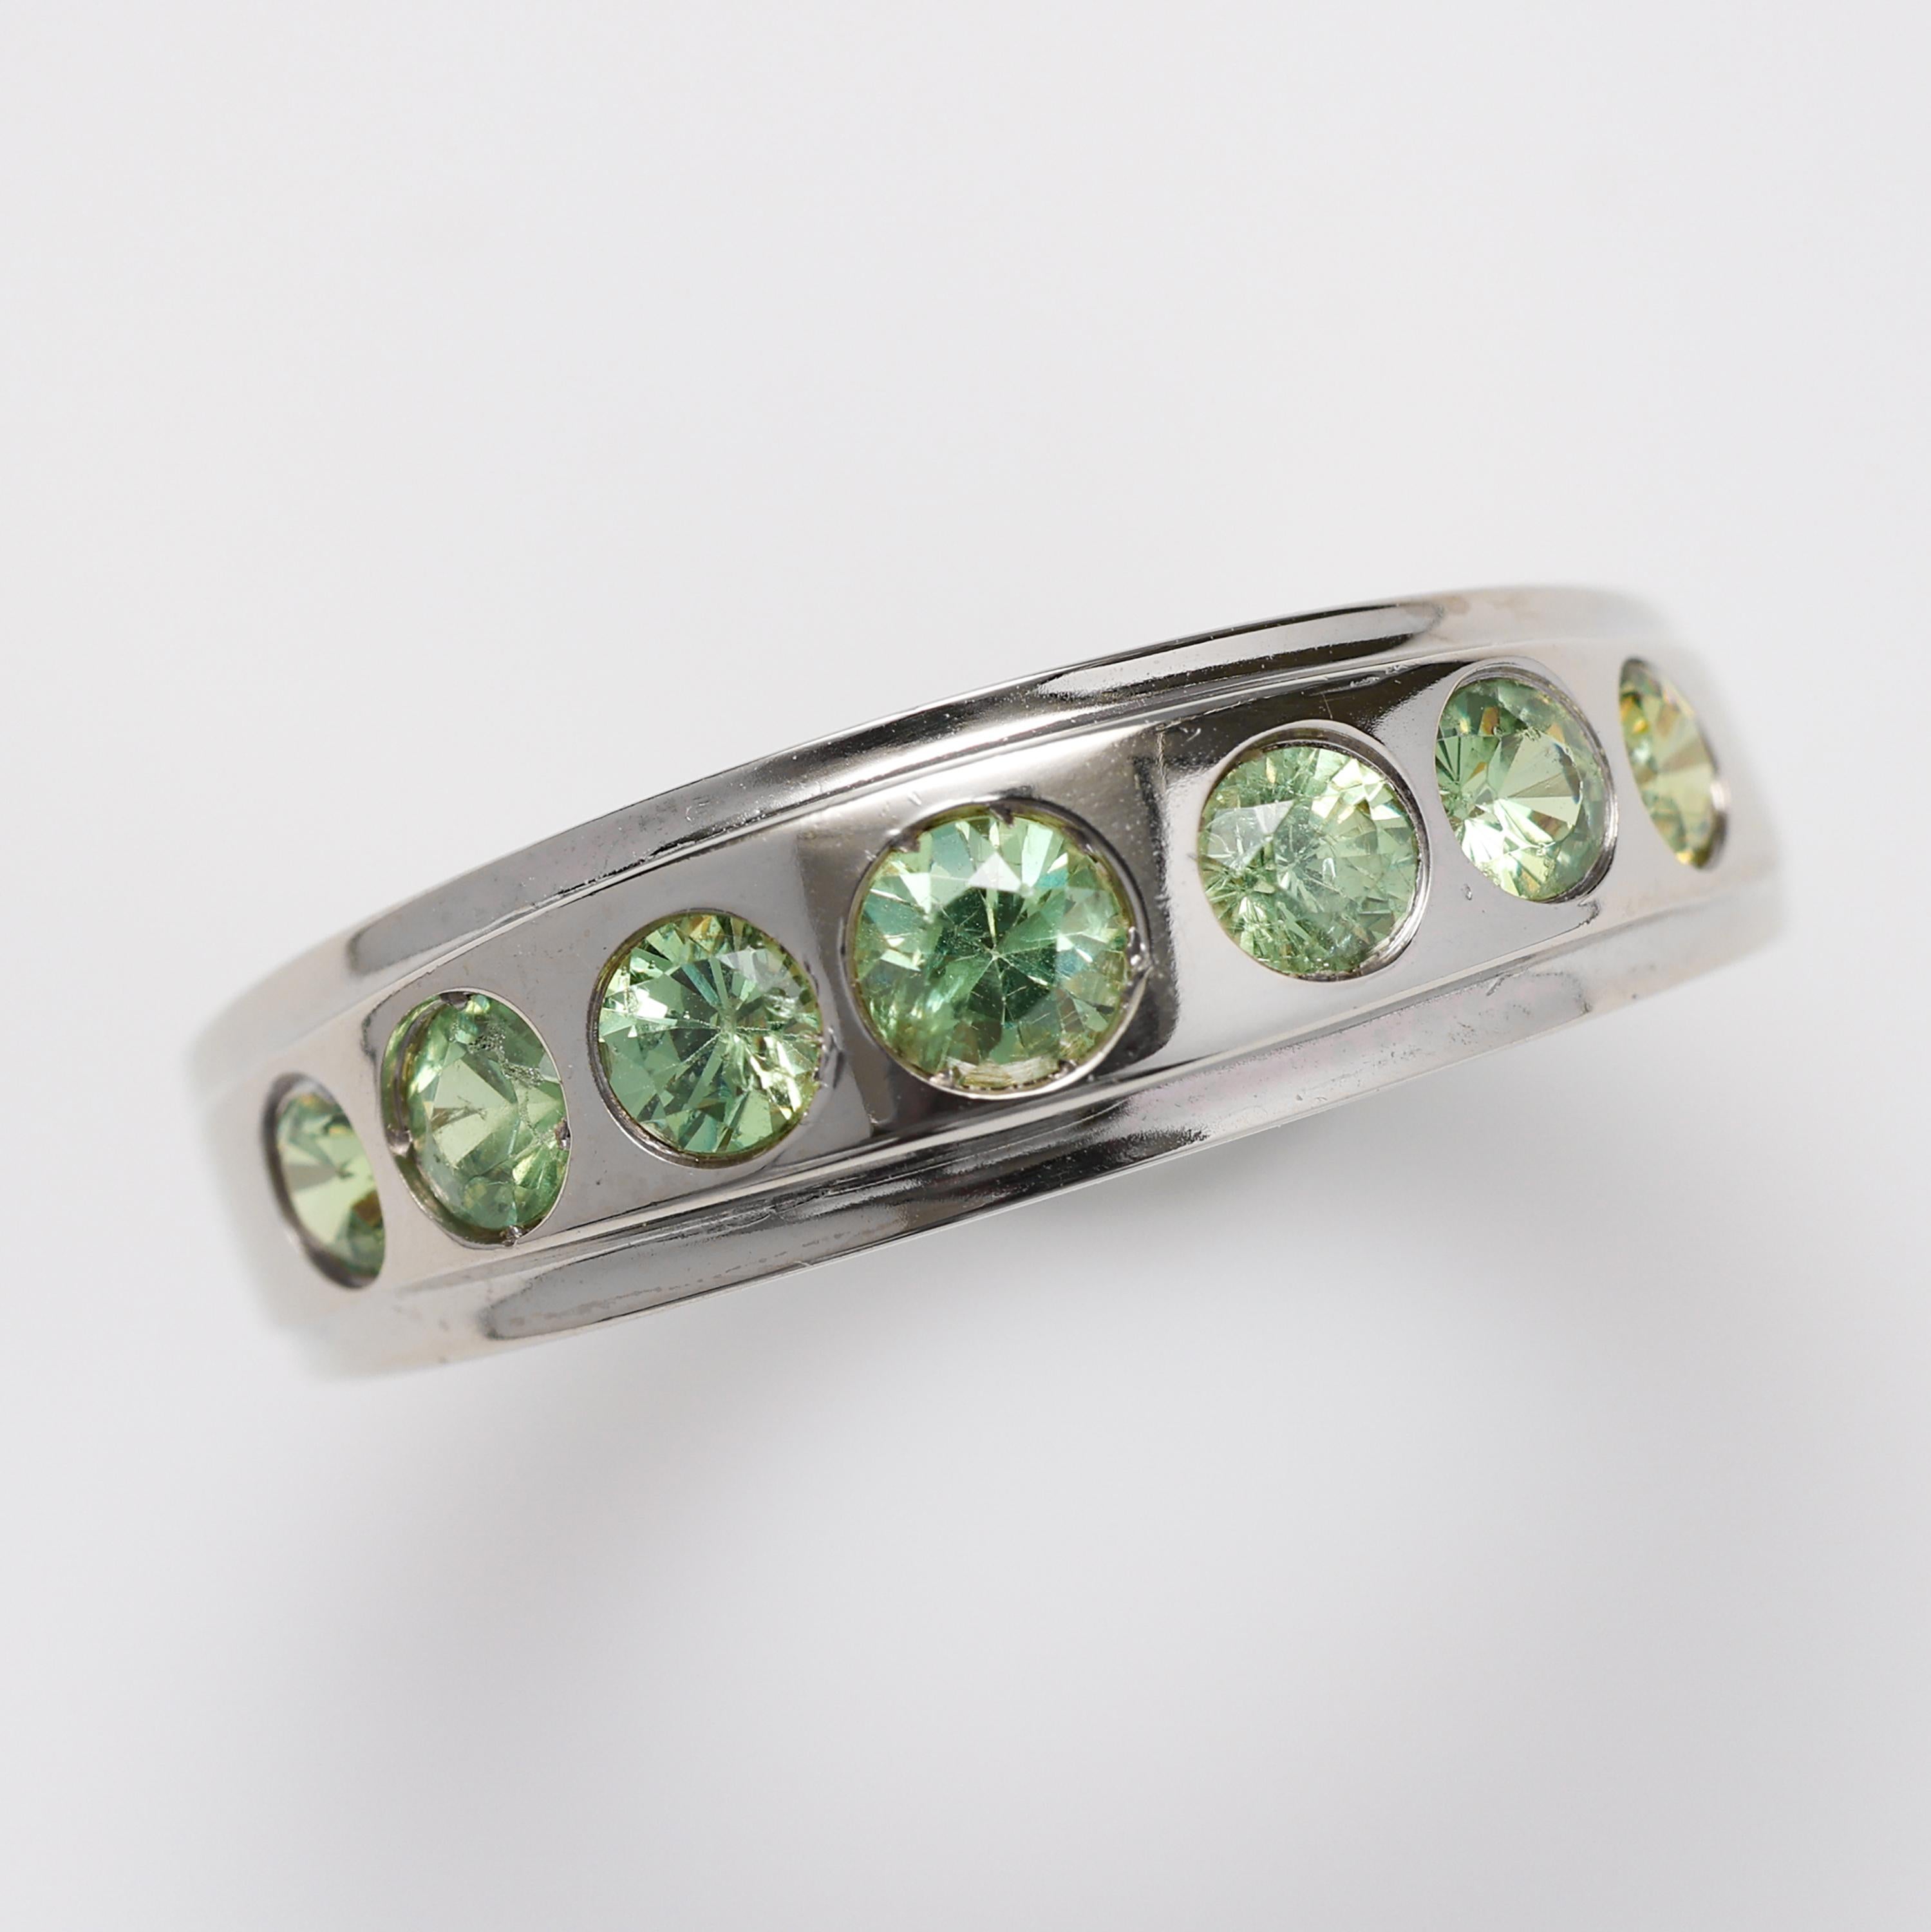 Dieser schlichte Unisex-Ring aus 18 Karat Weißgold mit sieben leuchtend grünen Demantoid-Granaten eignet sich perfekt als Ehering oder Stapelring. Dieser zeitlose Klassiker, der wahrscheinlich Ende der 1980er oder Anfang der 1990er Jahre von Hand